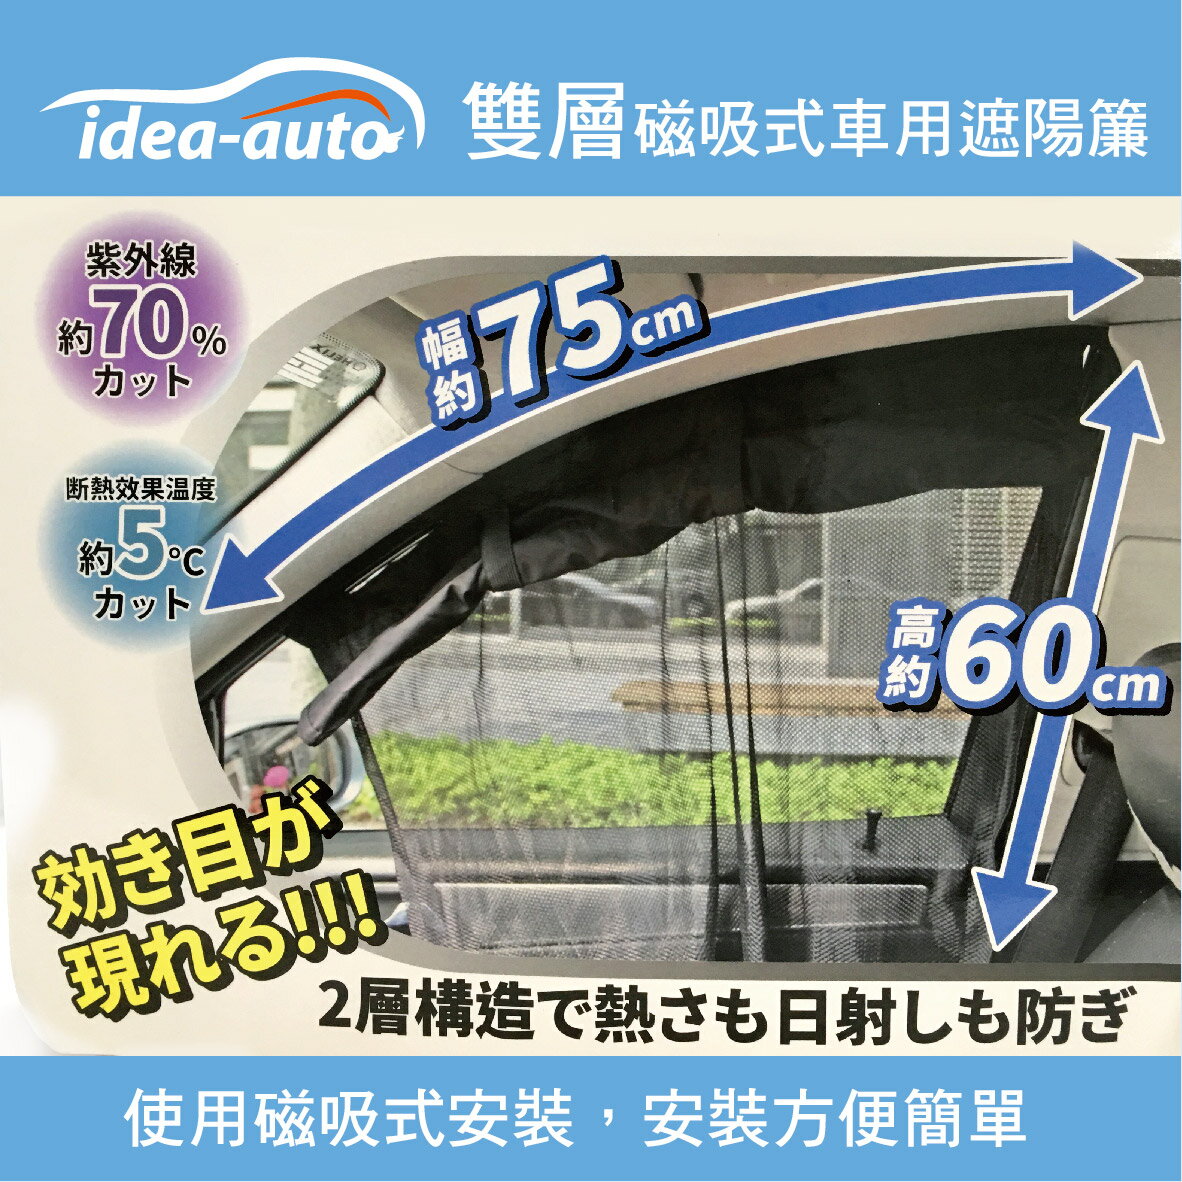 真便宜 idea-auto CG-0035雙層磁吸式車用遮陽簾(2入)黑